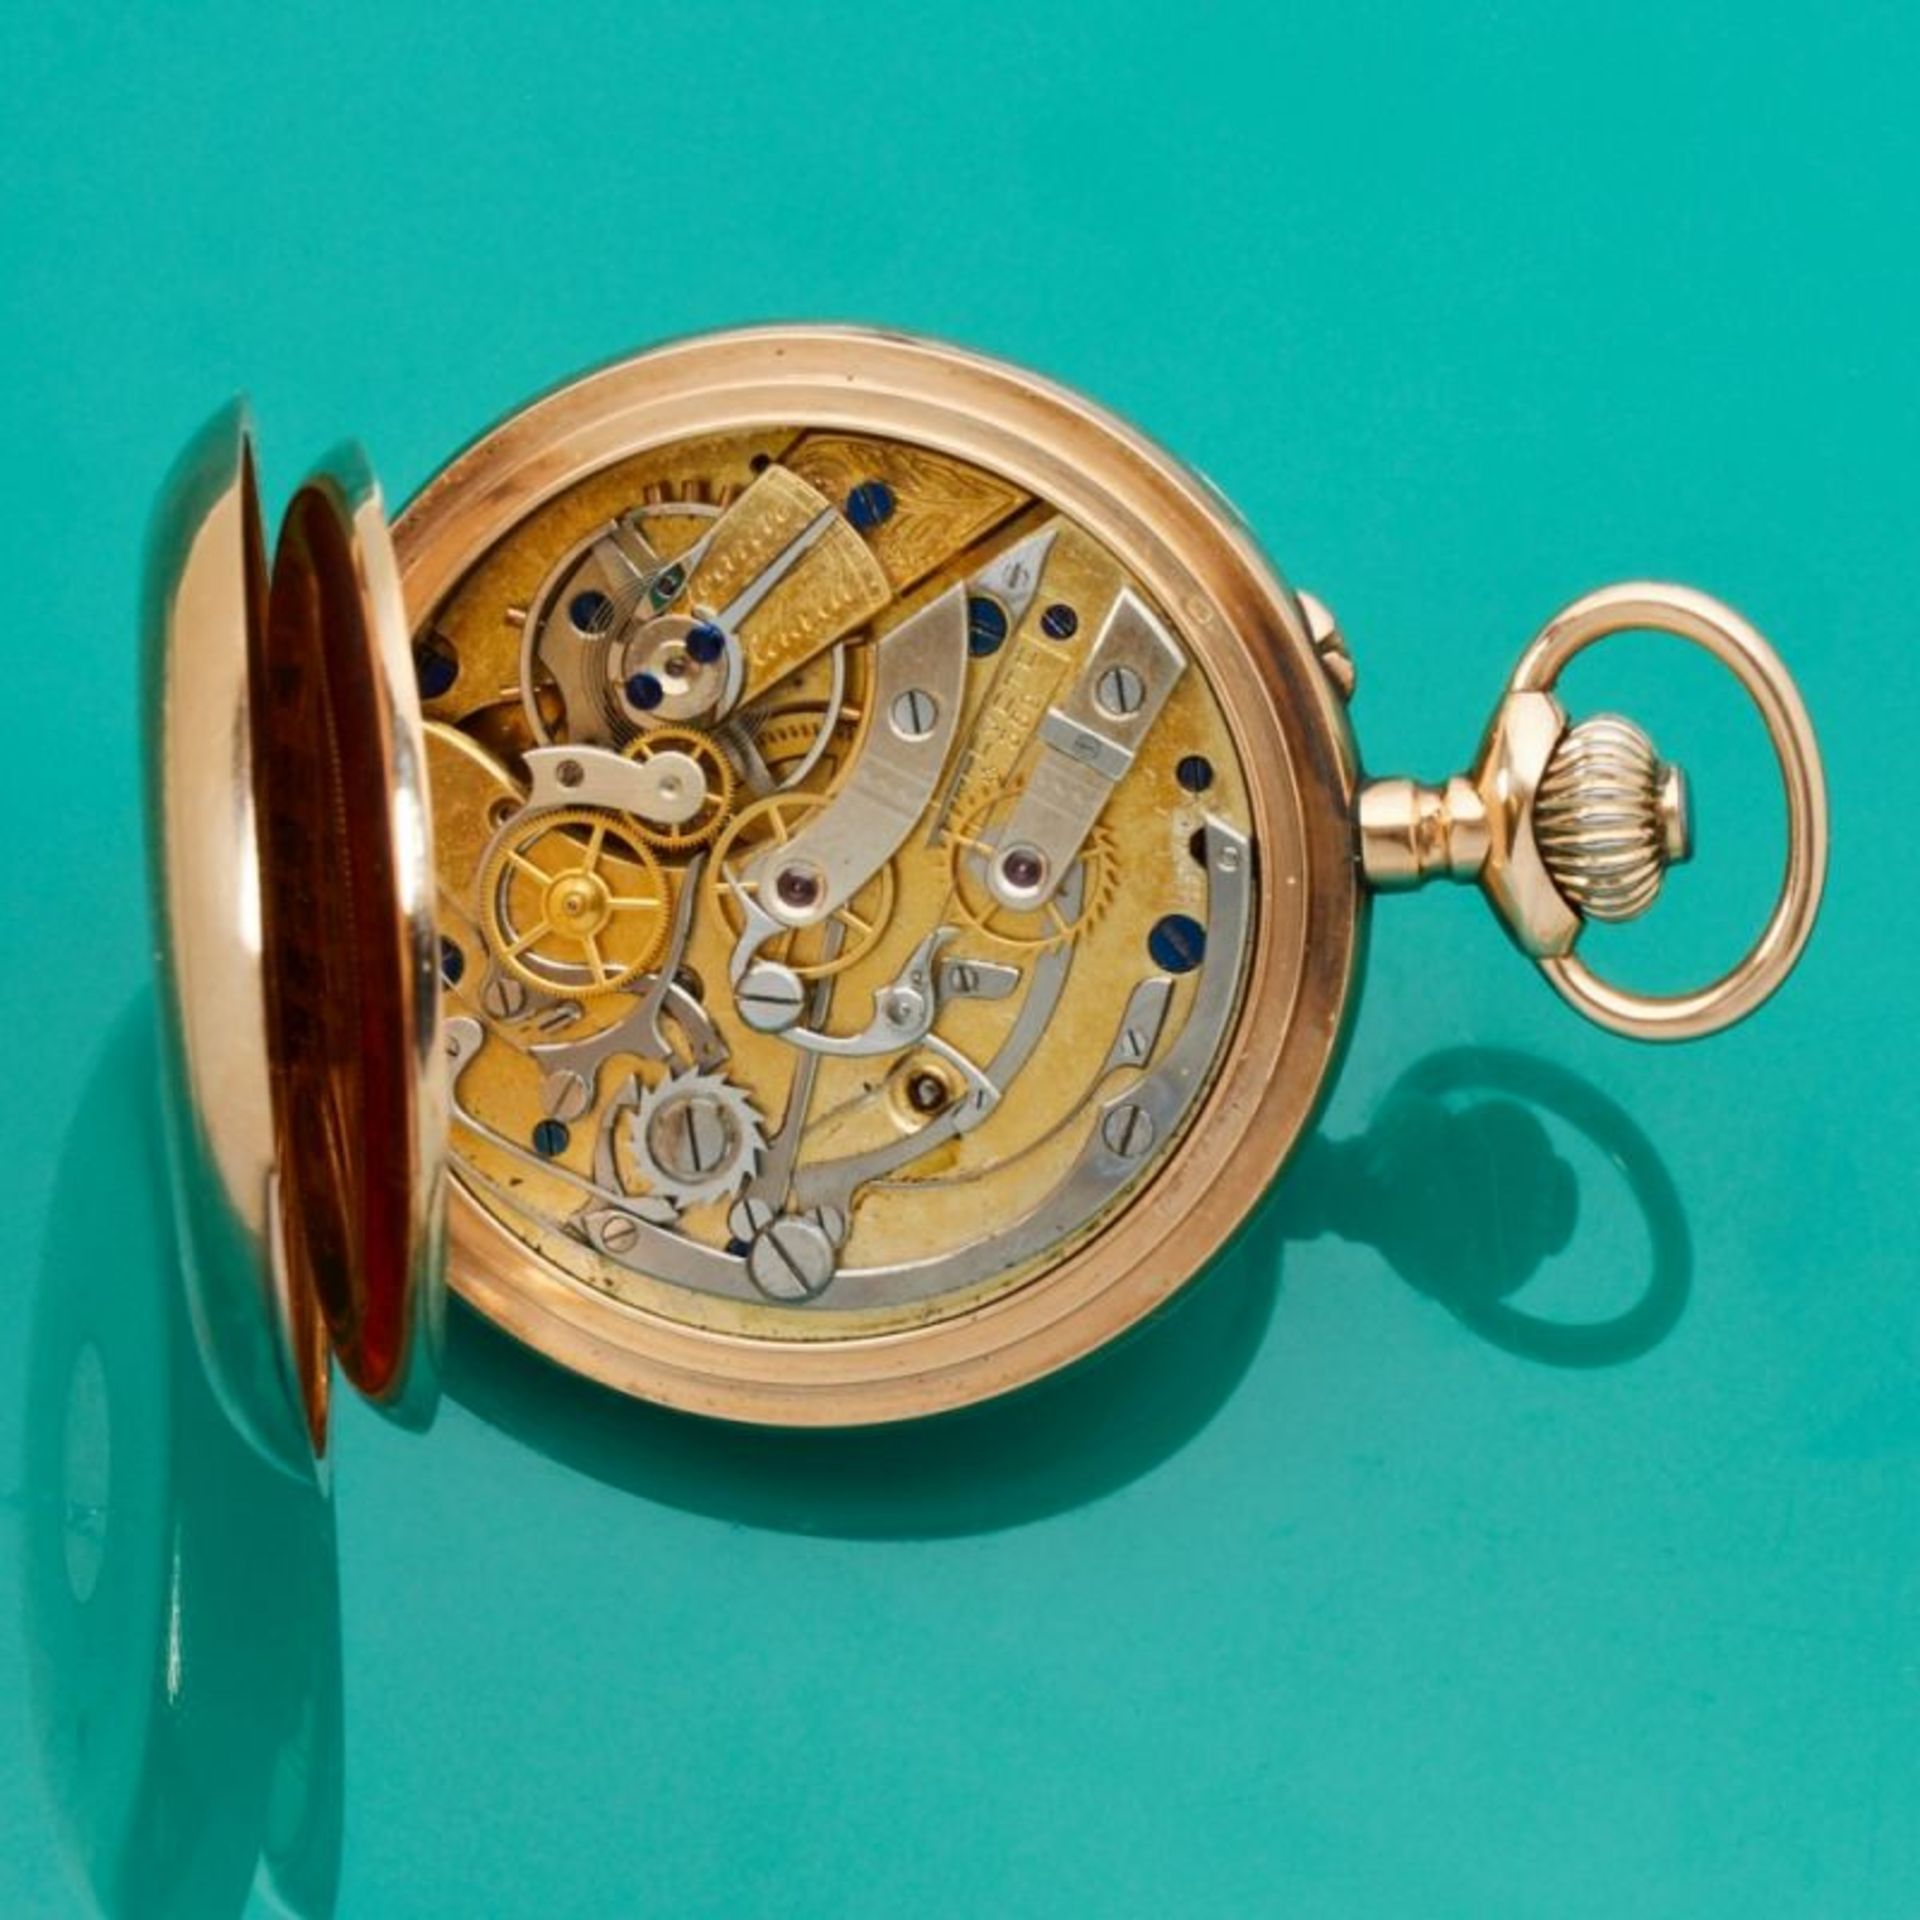 MERMOD FRÈRES - Chronometer - Image 2 of 2